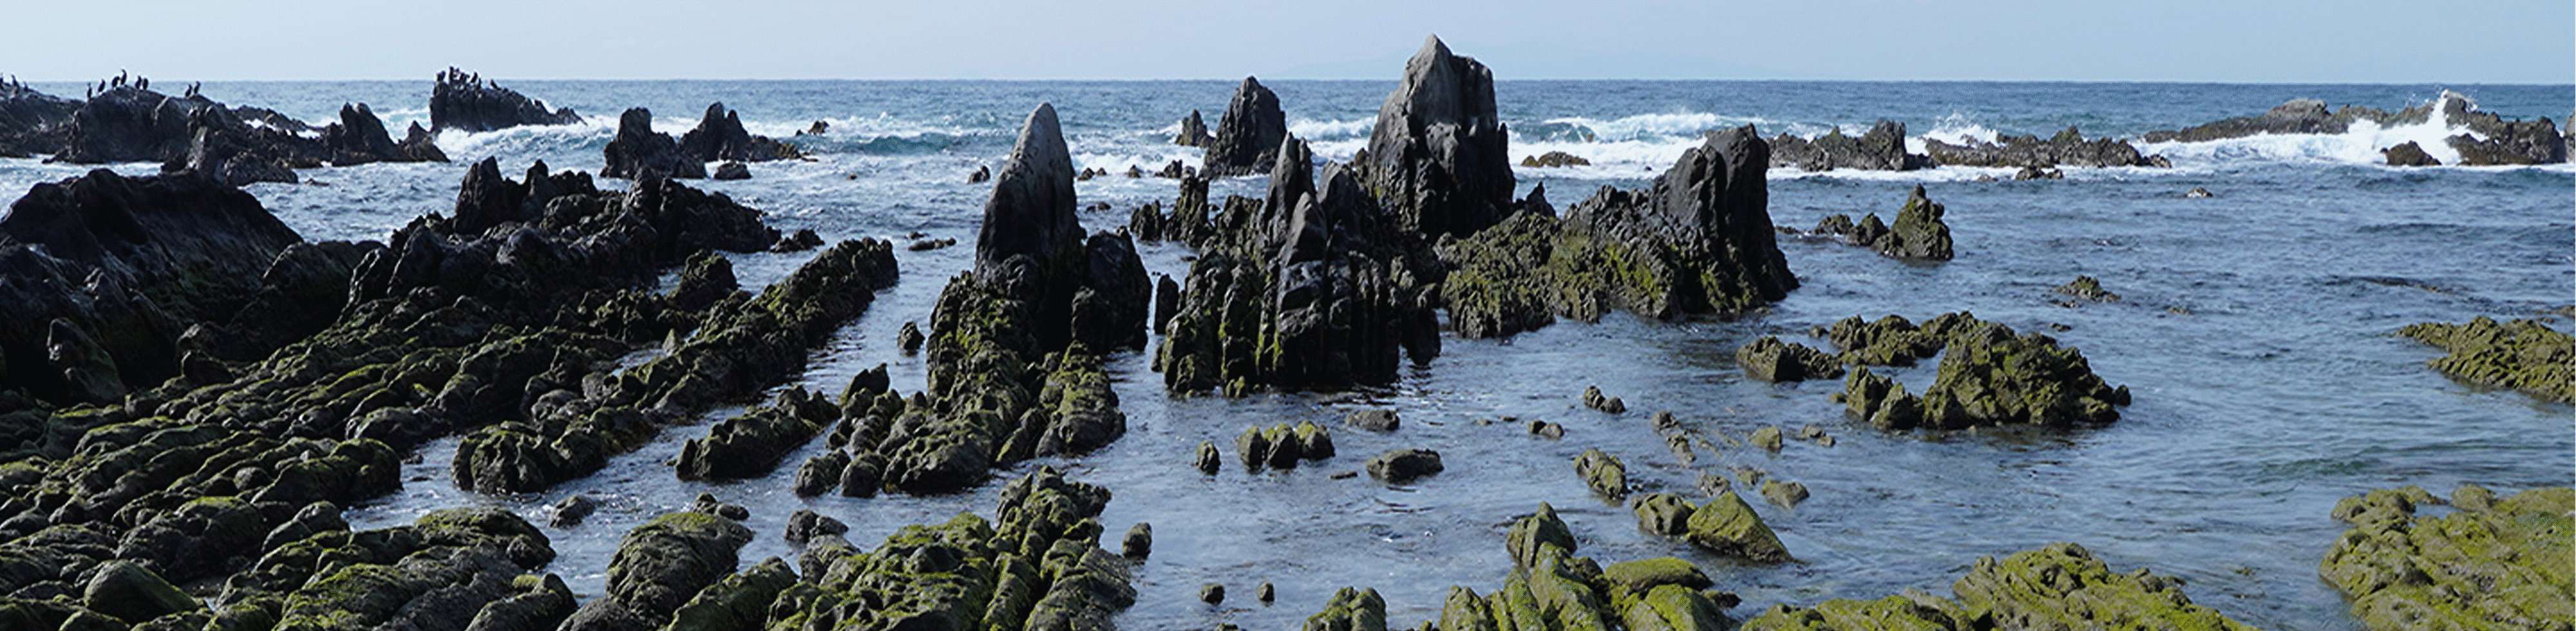 Imagem de uma formação rochosa costeira